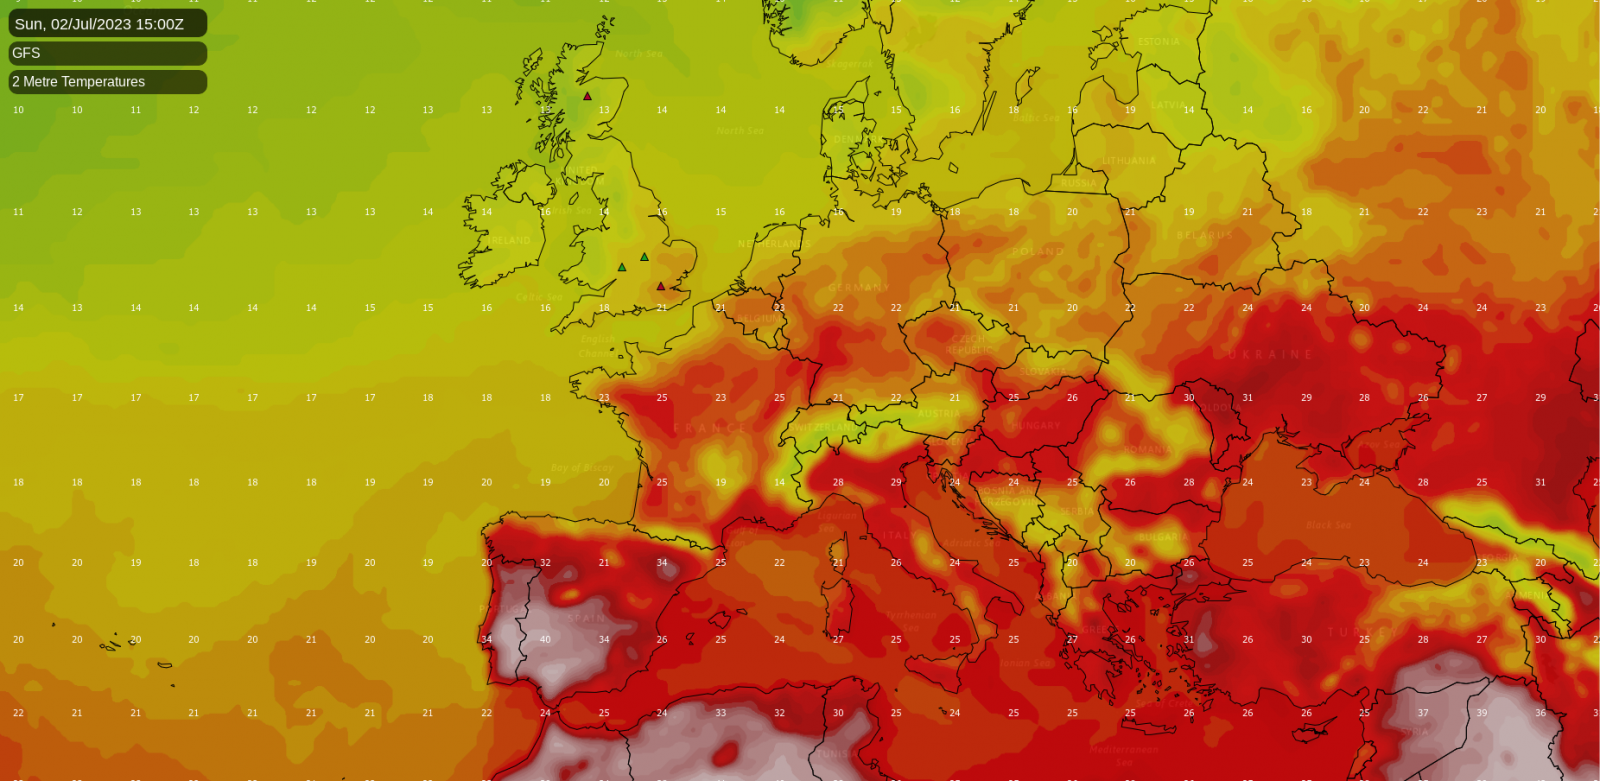 Clima caluroso en España este fin de semana, con temperaturas que rondan los 40 grados en algunas zonas